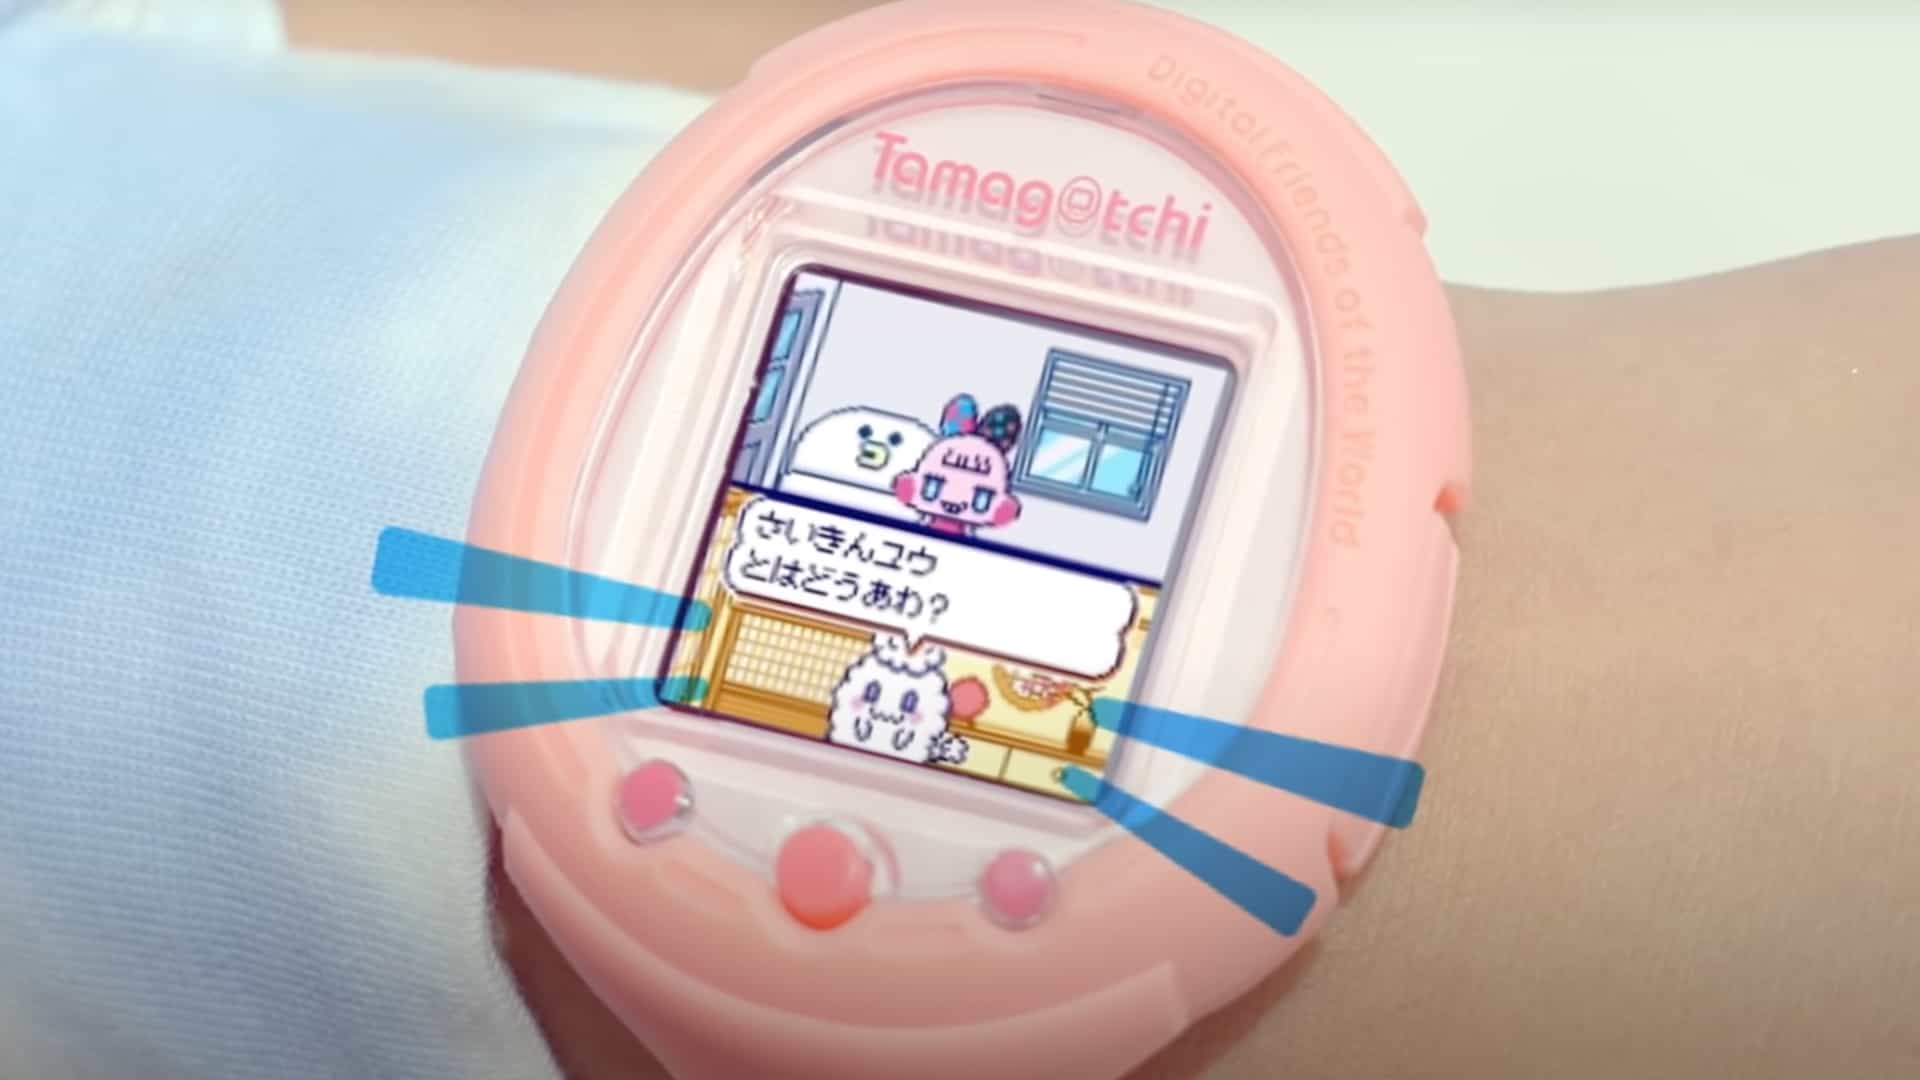 El nuevo reloj inteligente Tamagotchi se ve extraño y maravilloso